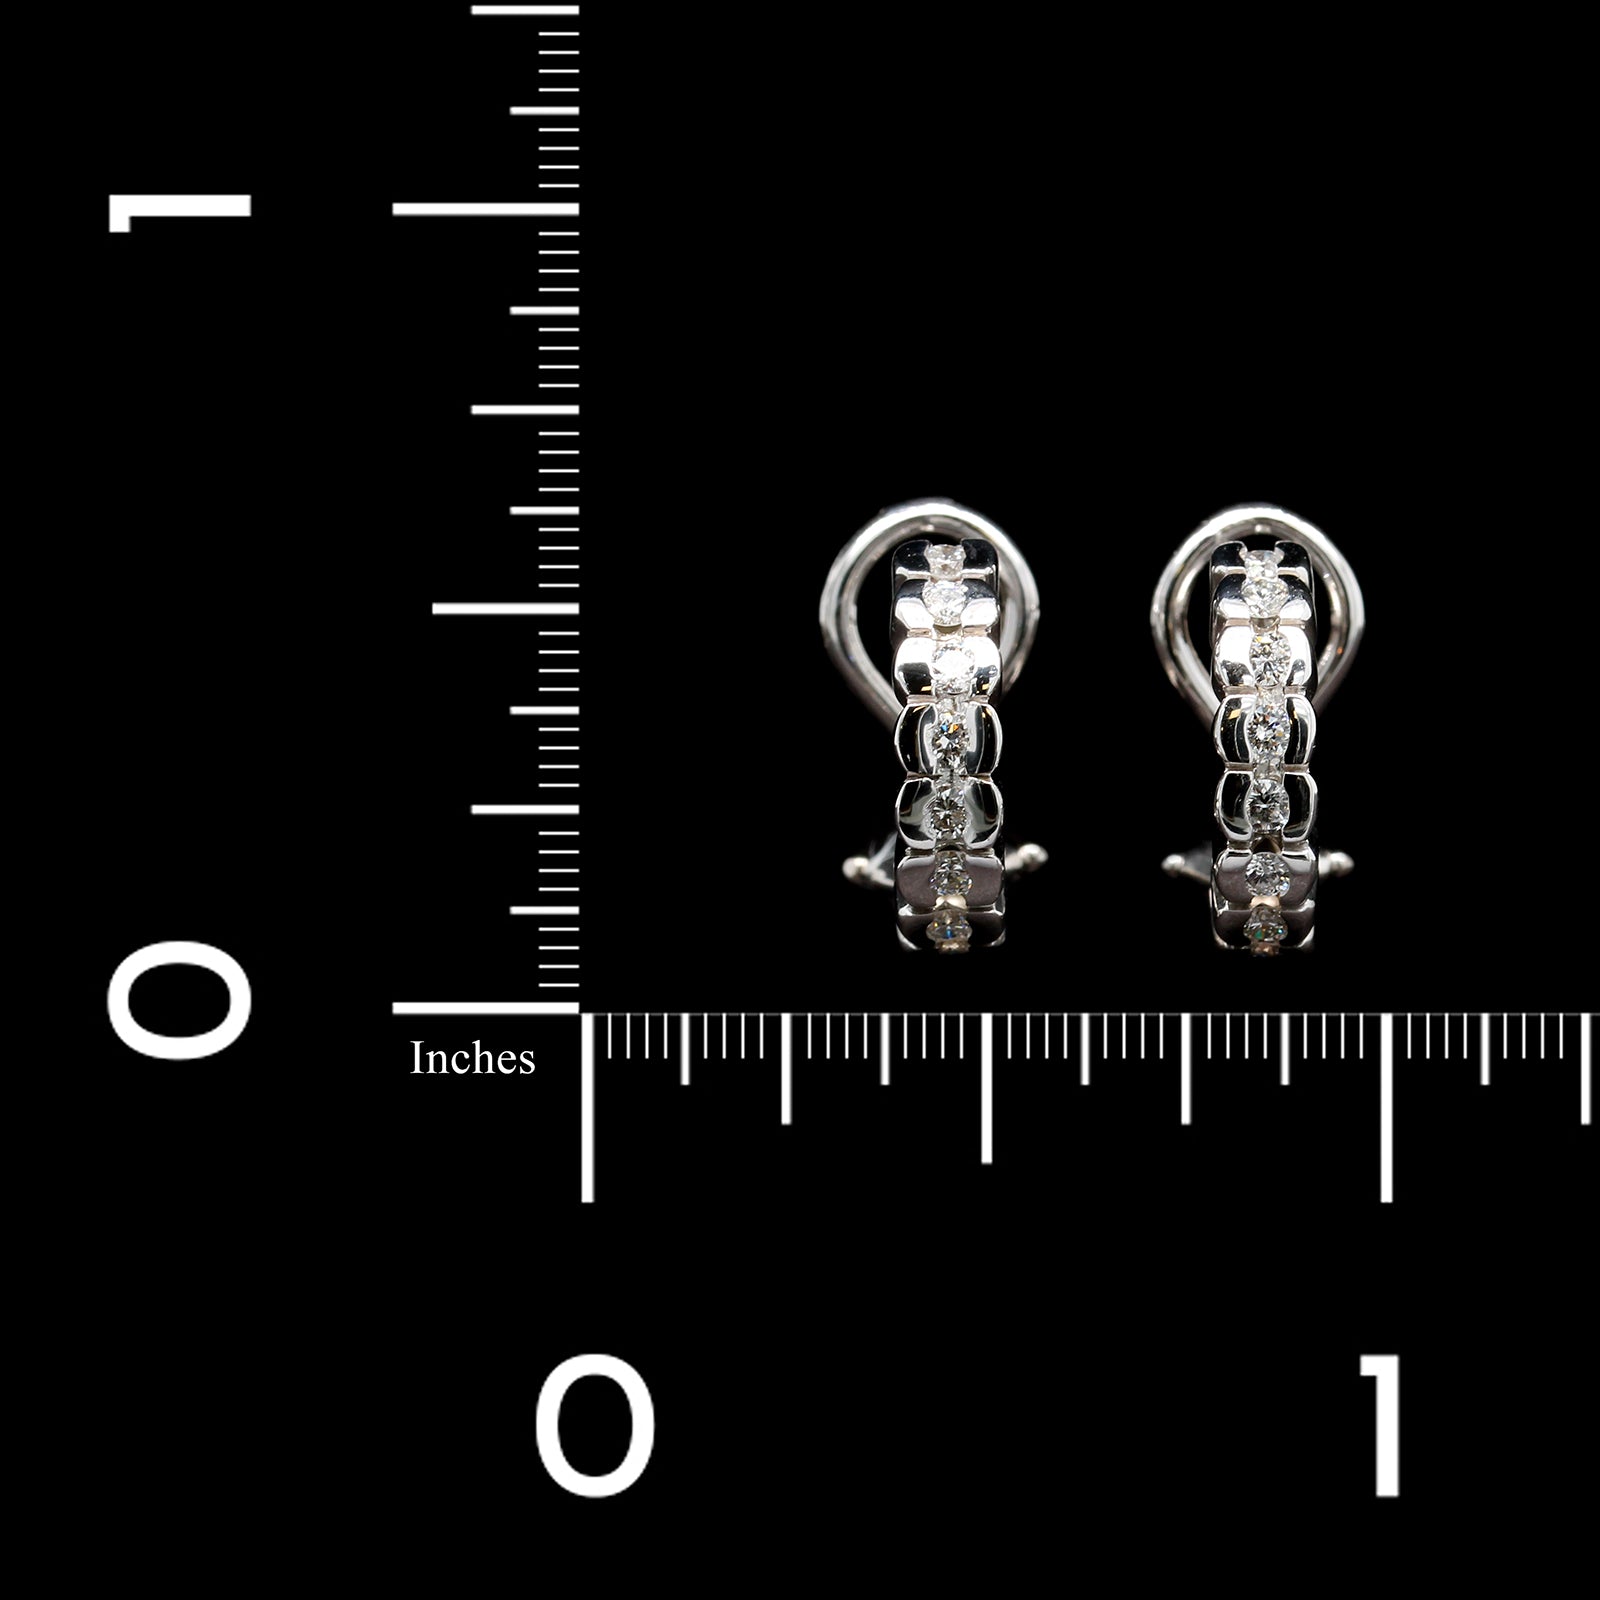 14K White Gold Estate Diamond Earrings